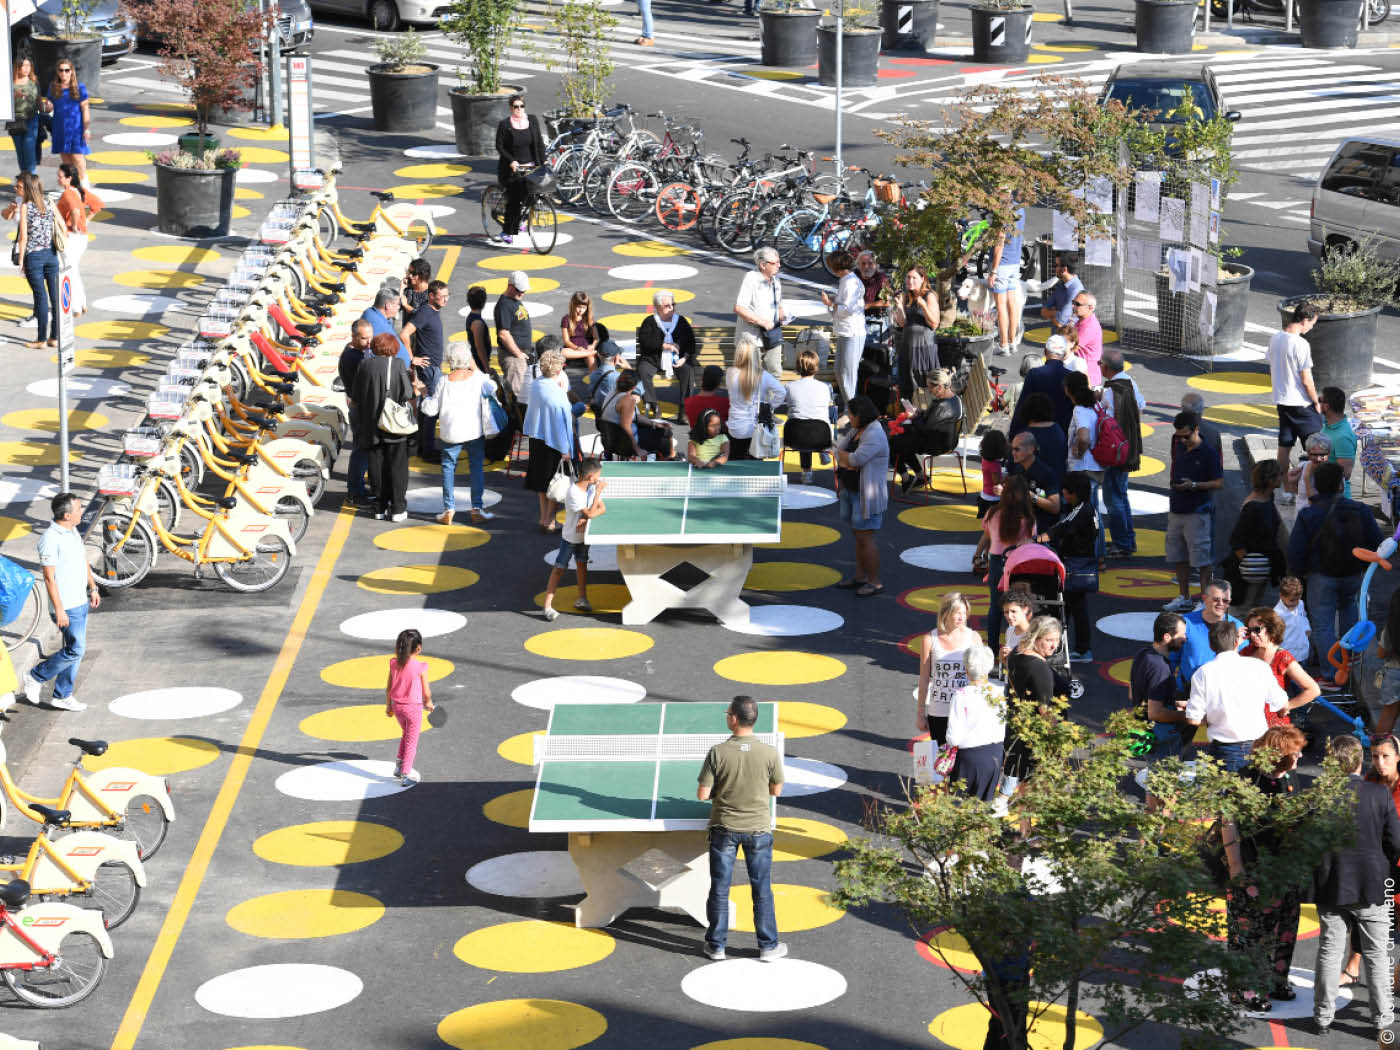 Menschen auf einem Platz mit gemalten Punkten auf dem Boden und Tischtennisplatten